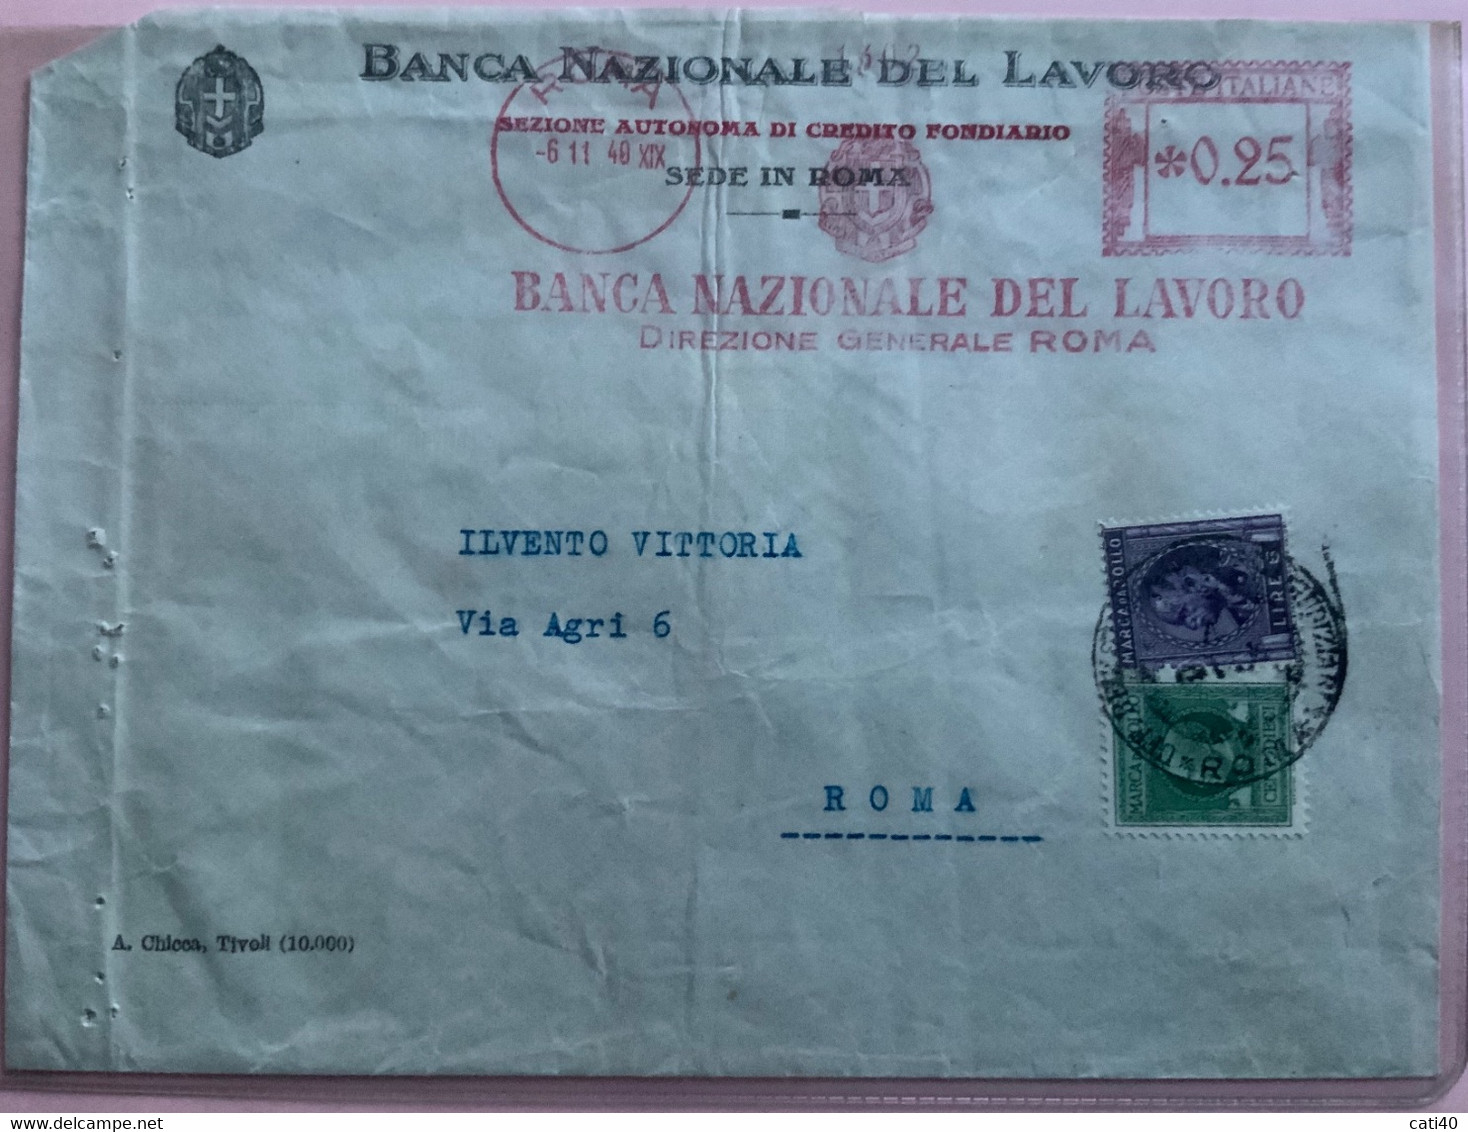 BANCA NAZIONALE DEL LAVORO  ROMA  TARGHETTA ROSSA 0,25 MISTA CON MARCHE DA BOLLO - 6/11/40 - Steuermarken